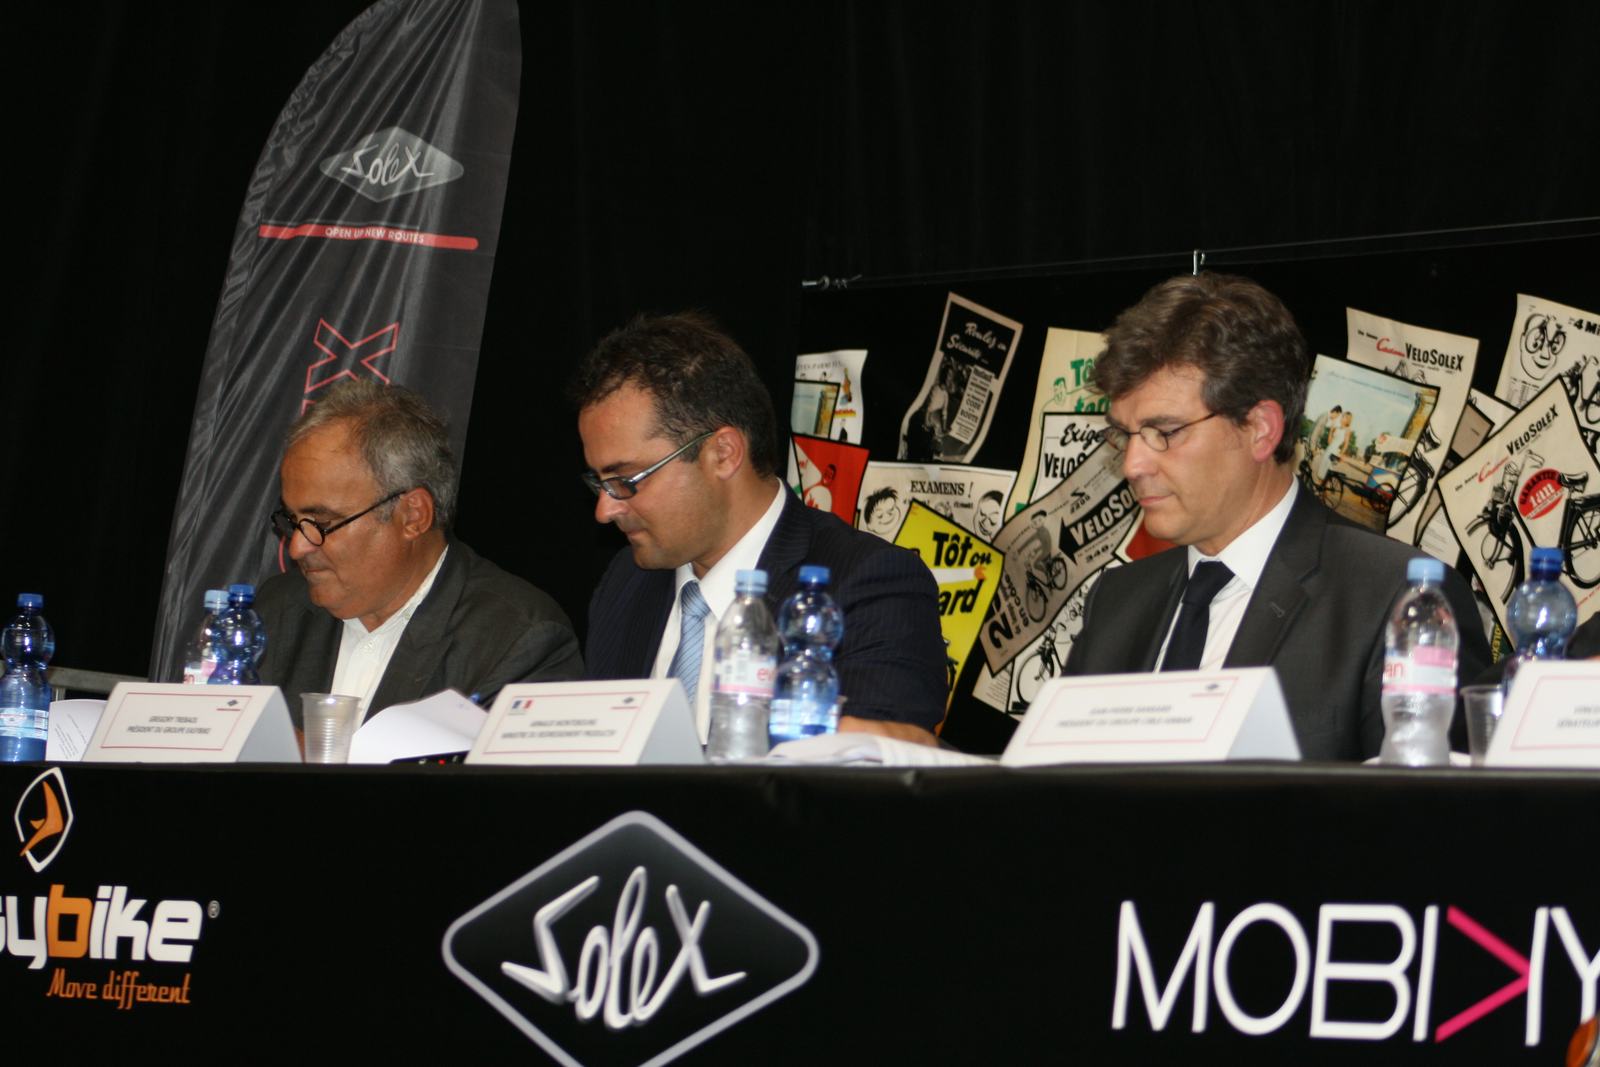 法國產業振興部長Arnaud Montebourg出席在Easybike Group、 Solex和Mobiky宣佈位於Saint- Lô新工廠的活動上。